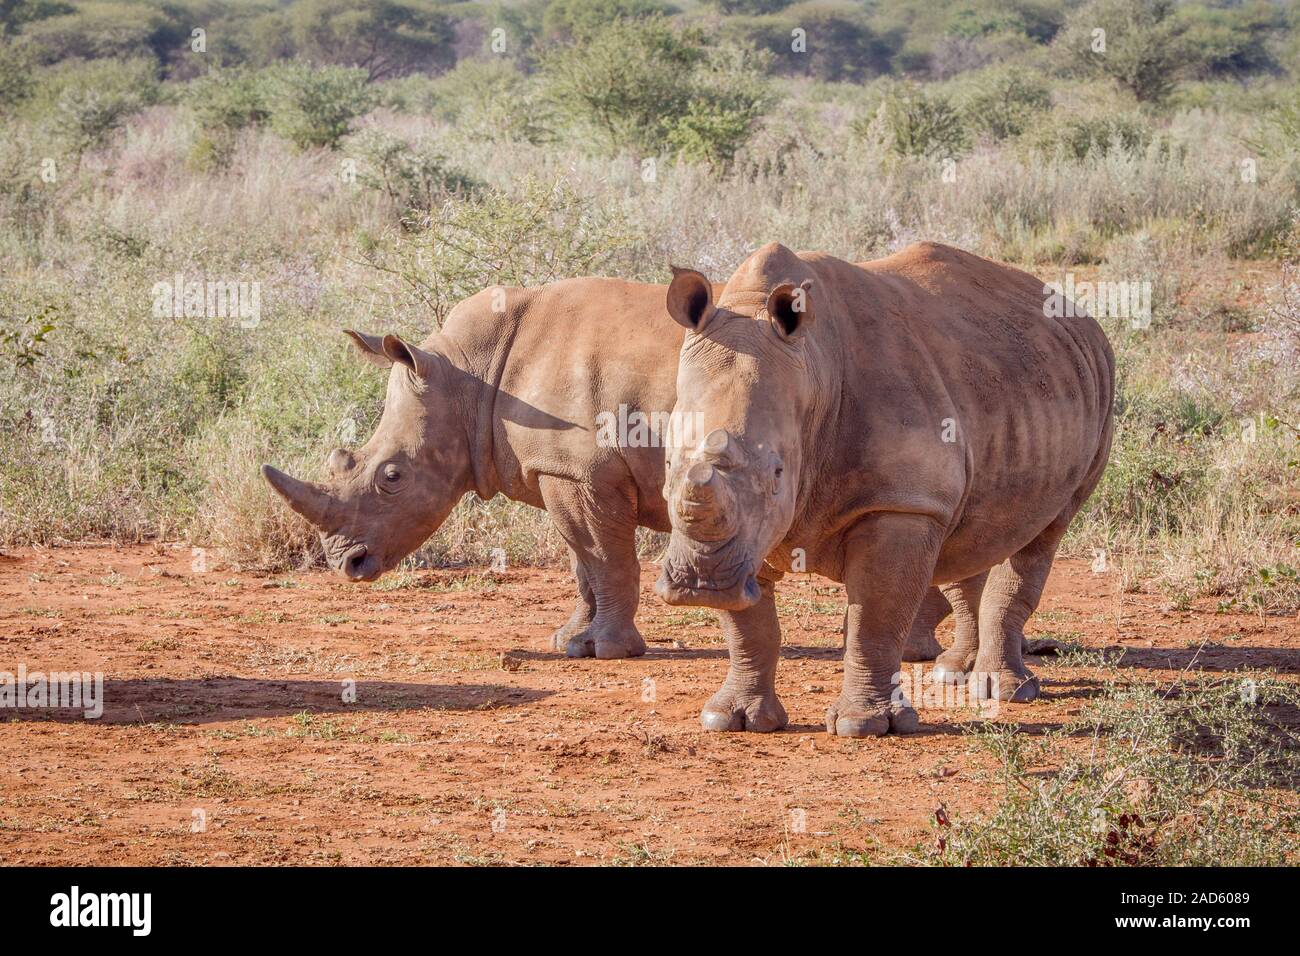 Dos rinocerontes blancos de pie en la arena. Foto de stock